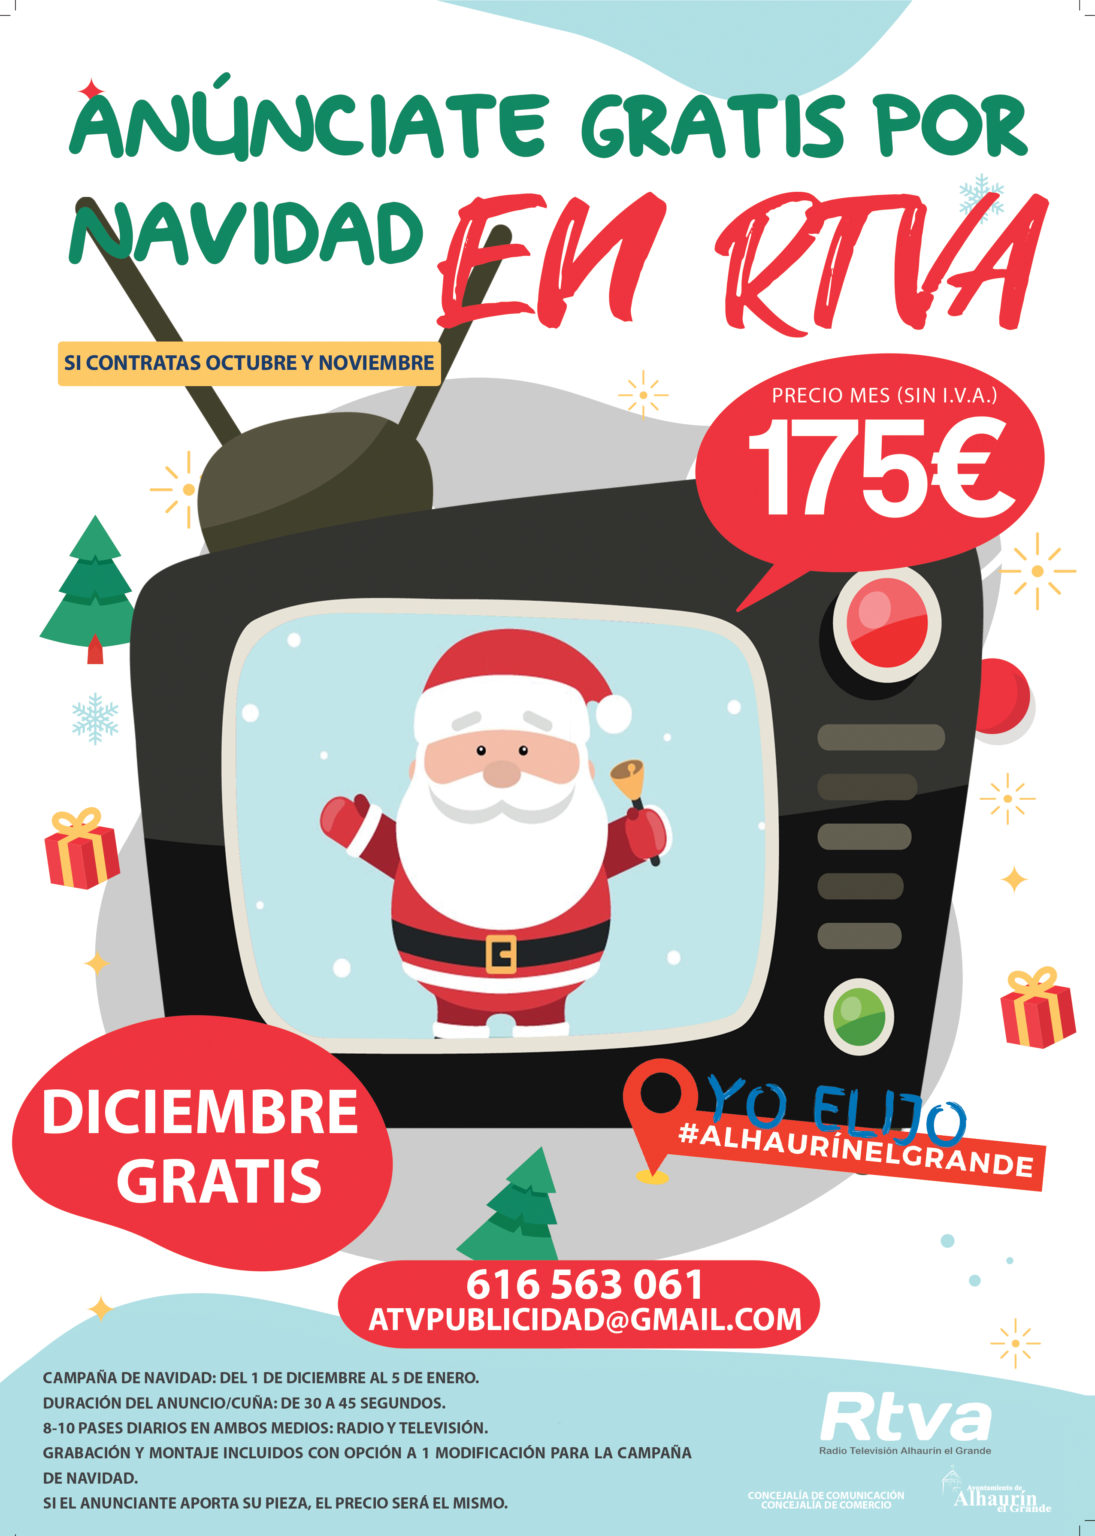 ‘Anúnciate gratis por Navidad’ con la campaña de publicidad de Radio Televisión de Alhaurín el Grande